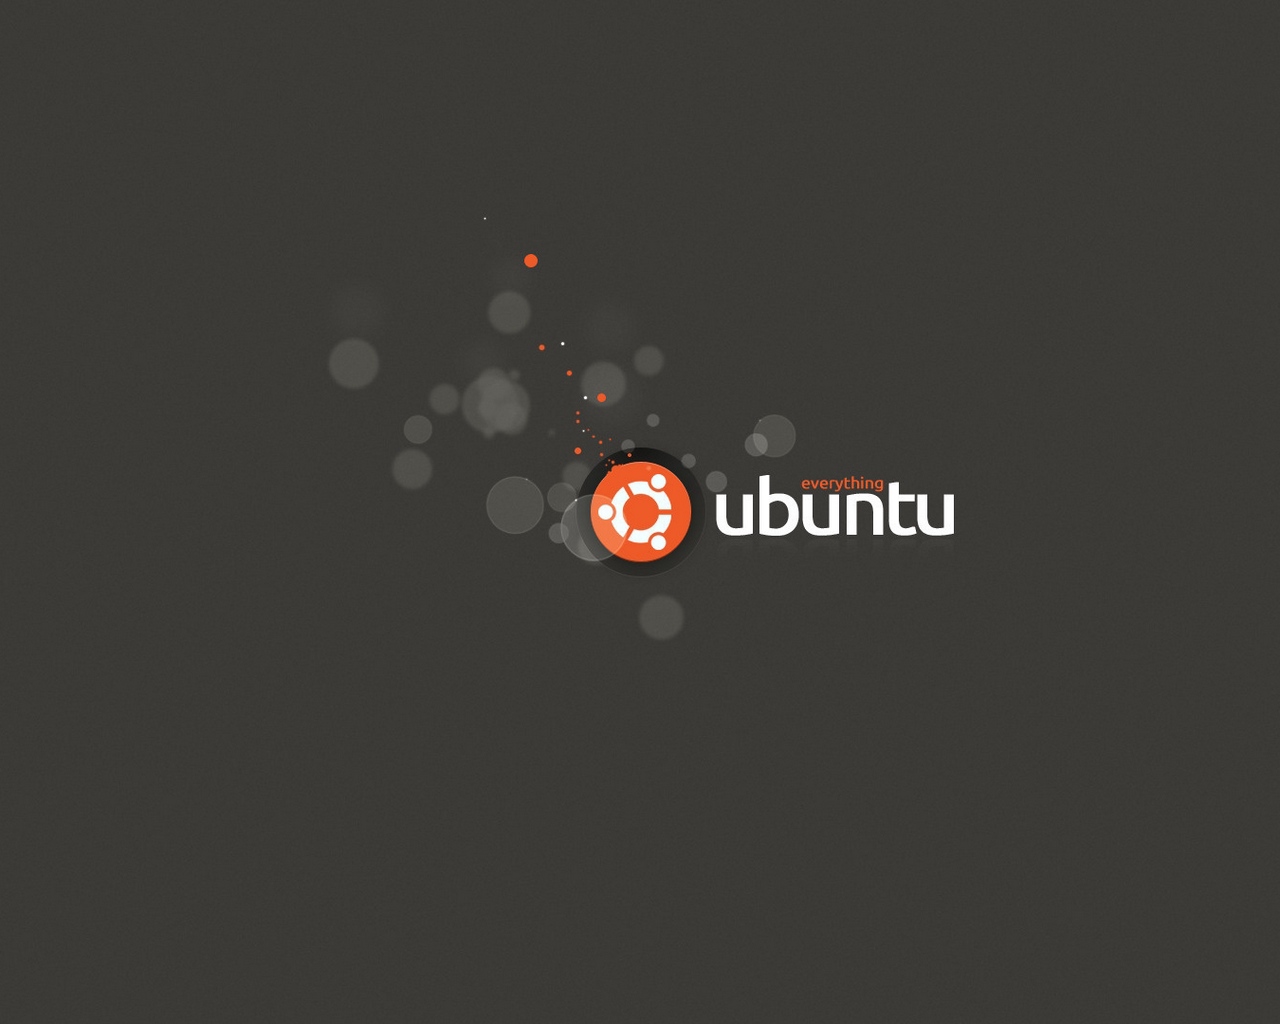 Download wallpaper 1280x1024 ubuntu everything logo background